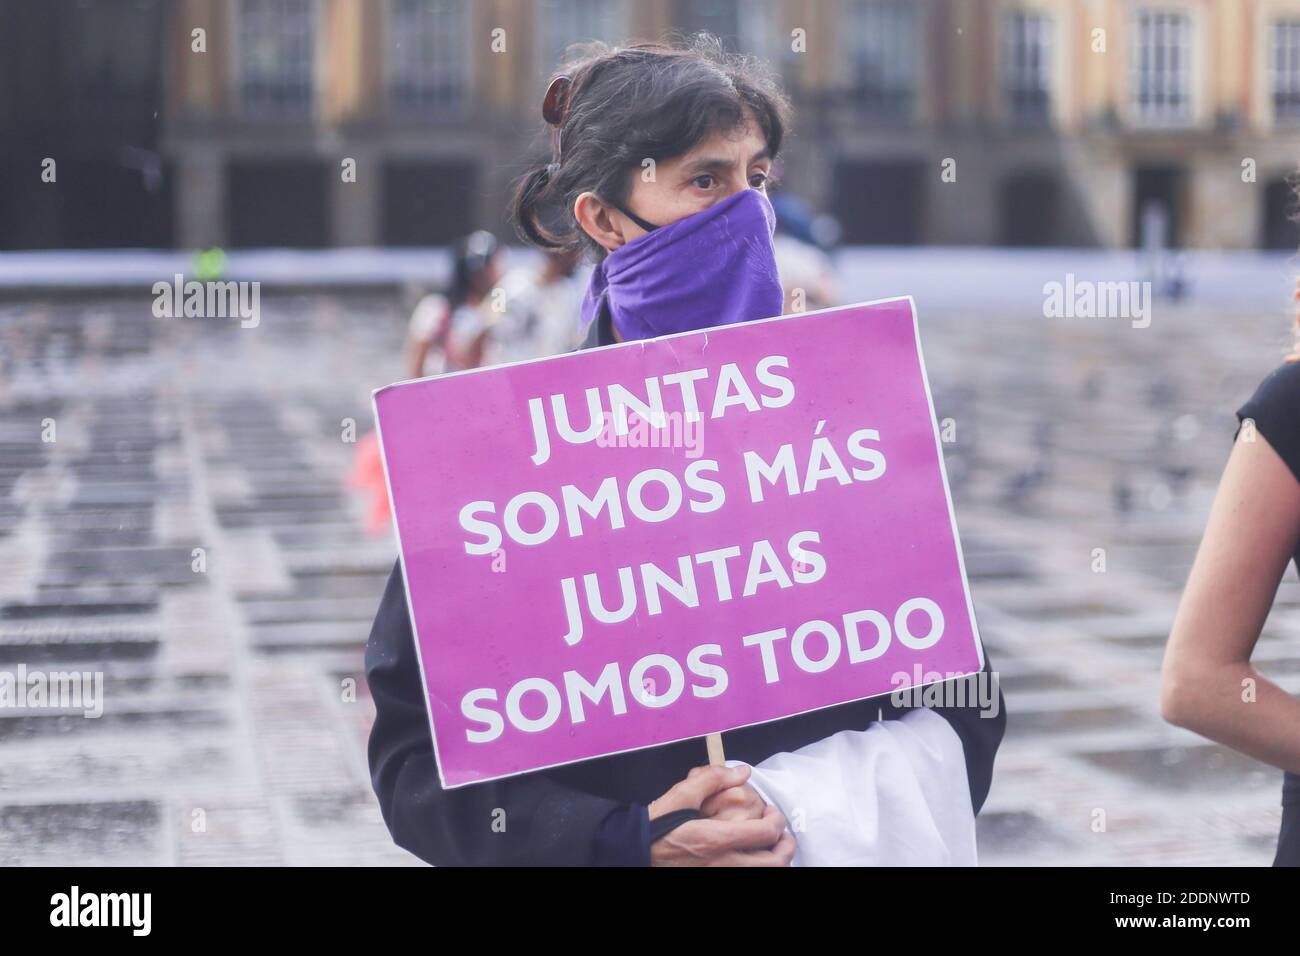 25. November 2020: Eine Frau nimmt am Tag der Gewaltlosigkeit gegen Frauen in Bogota Teil und hat ein Zeichen, das sagt: "Zusammen sind wir mehr, zusammen sind wir alles" Credit: Daniel Garzon Herazo/ZUMA Wire/Alamy Live News Stockfoto